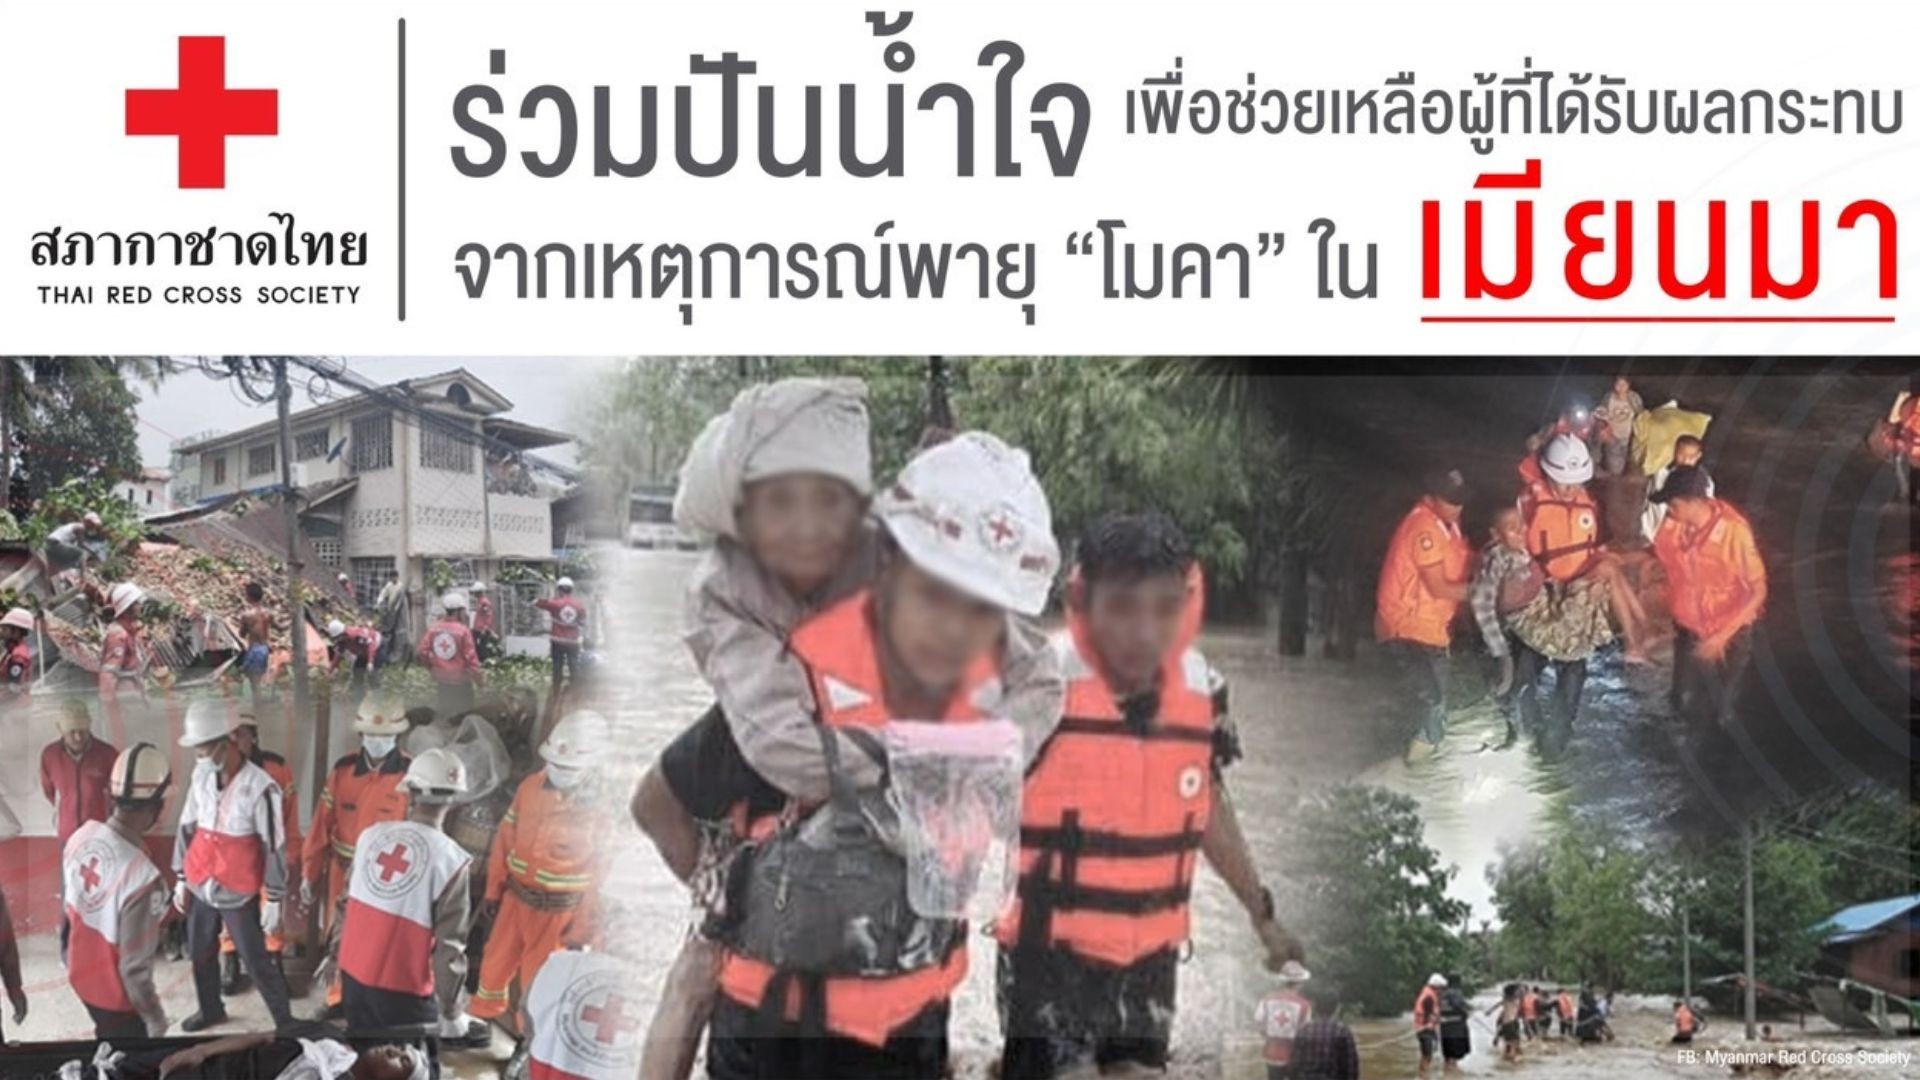 "สภากาชาดไทย" เปิดรับบริจาคเงินช่วยเหลือด้านมนุษยธรรมแก่ผู้ประสบภัยจากเหตุการณ์พายุ "โมคา" ในสาธารณรัฐแห่งสหภาพเมียนมา